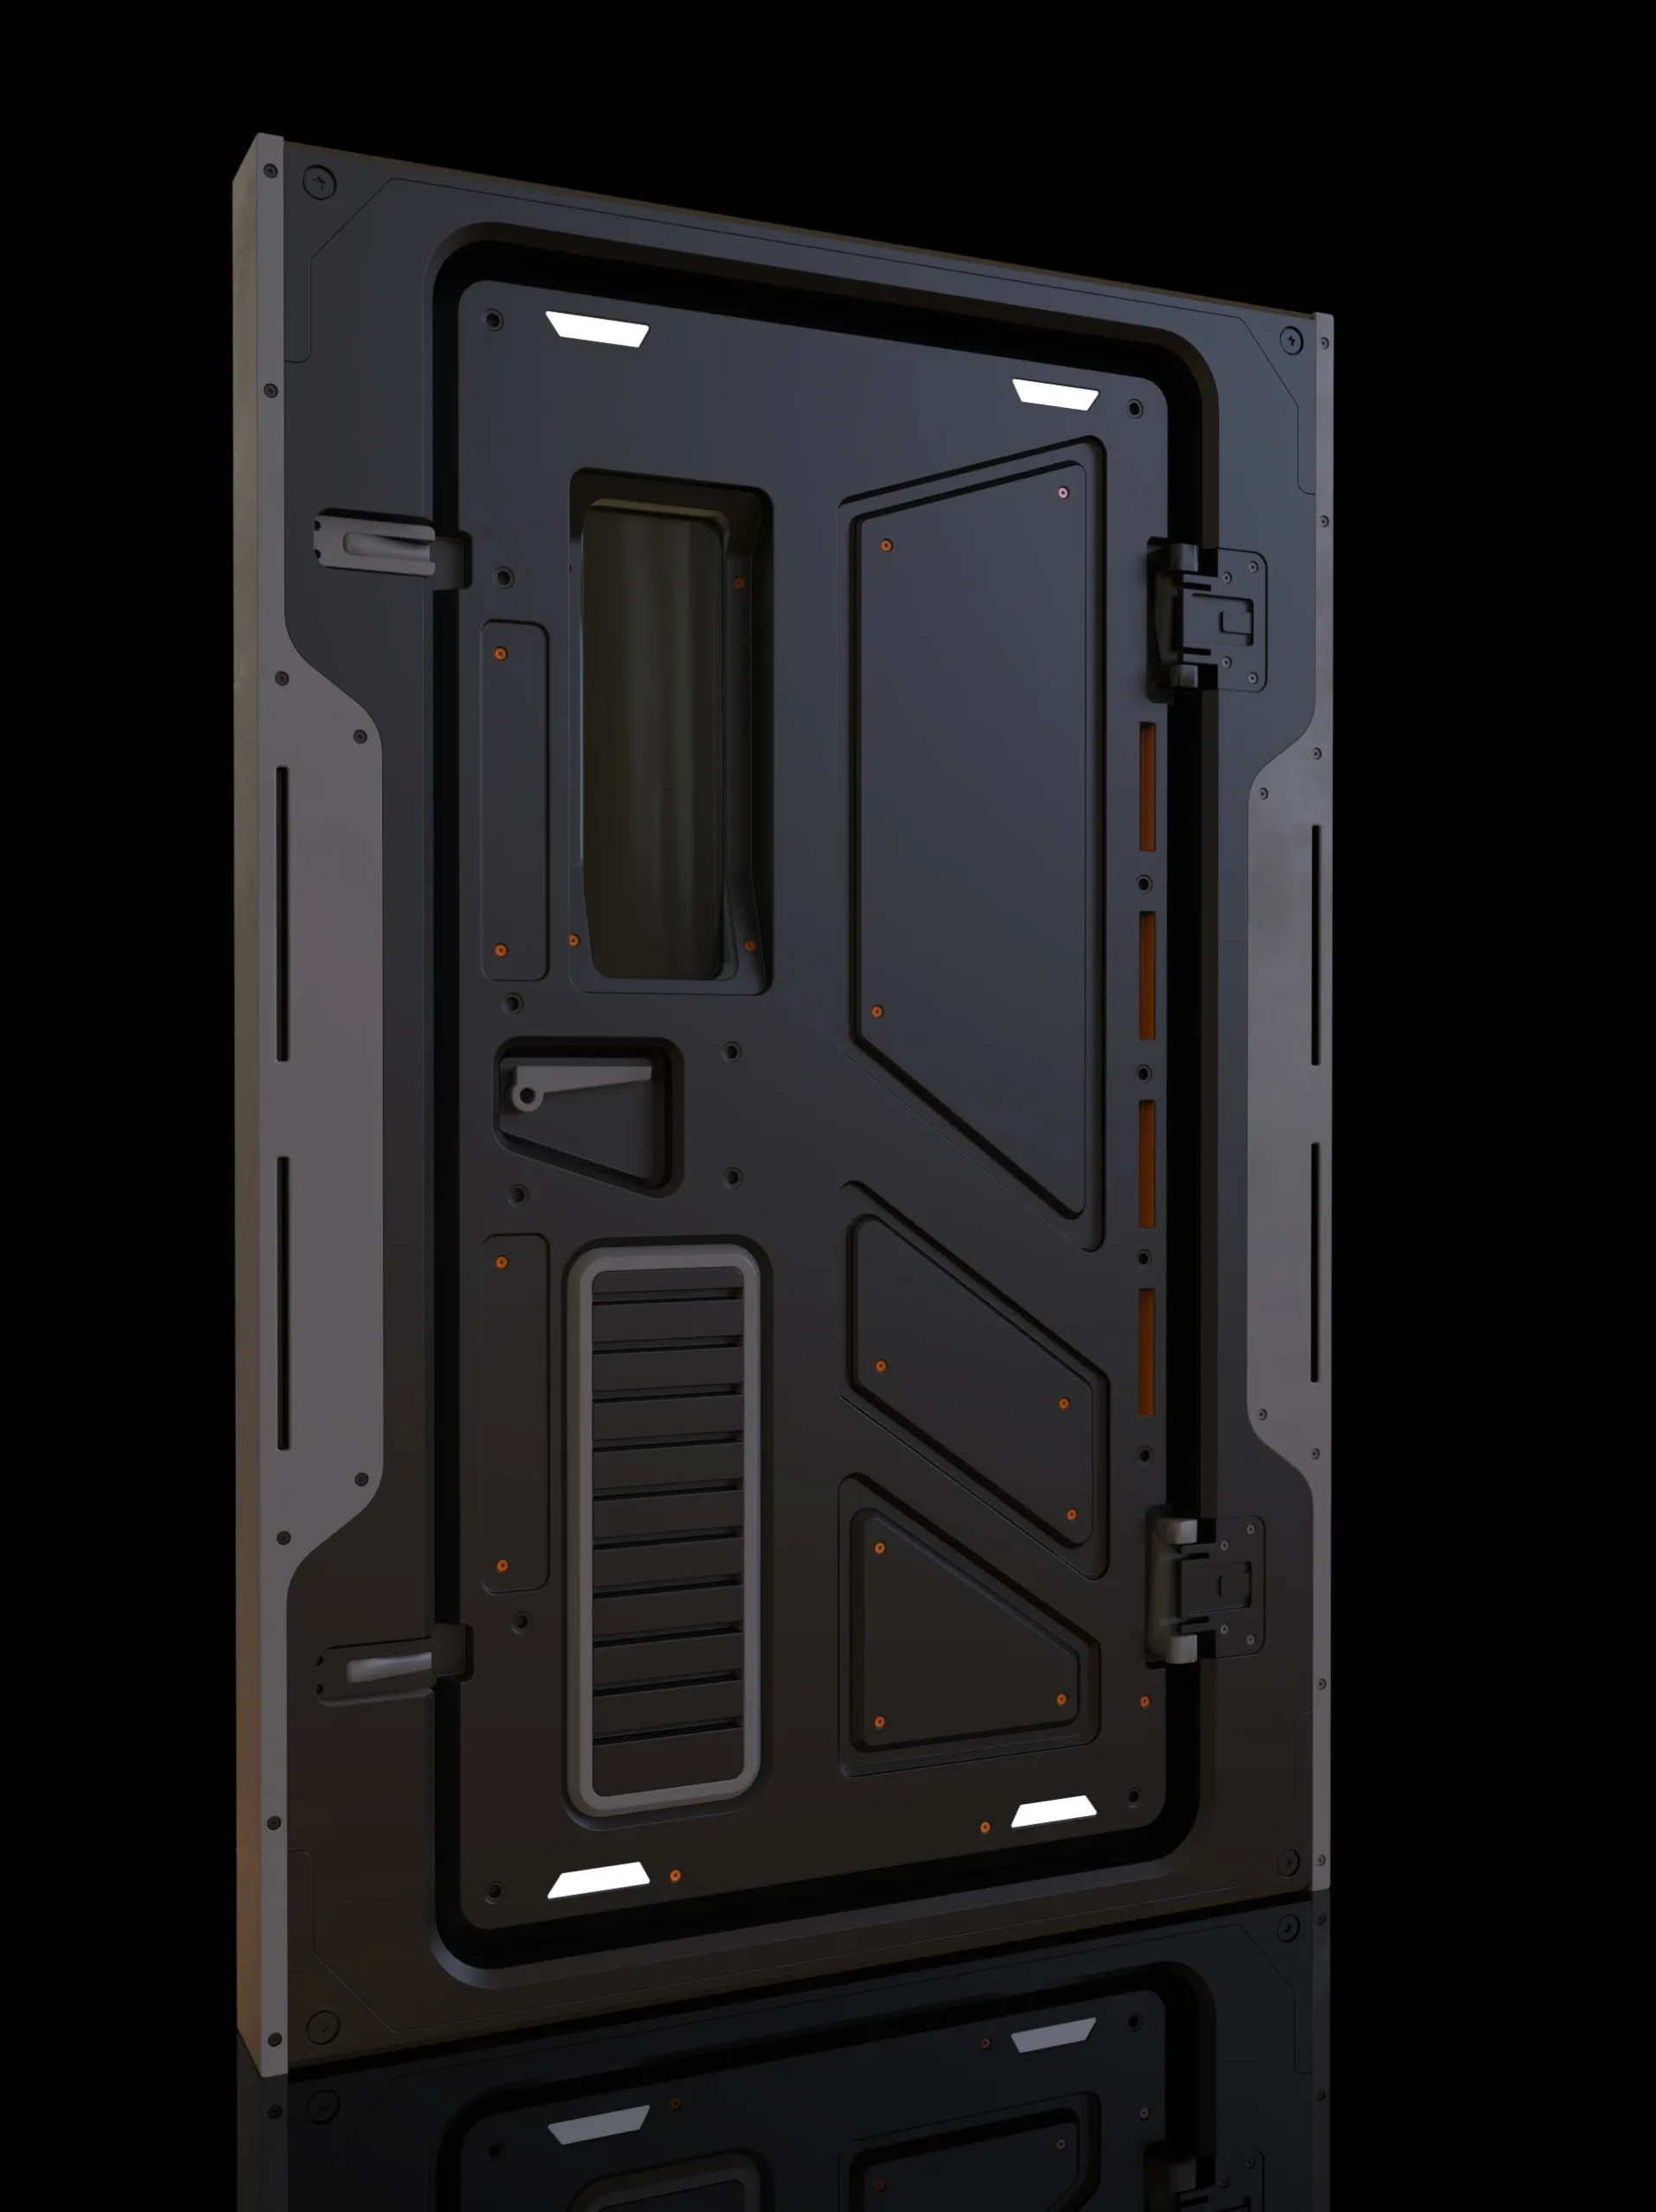 Futuristic Sci-Fi Doors Collection